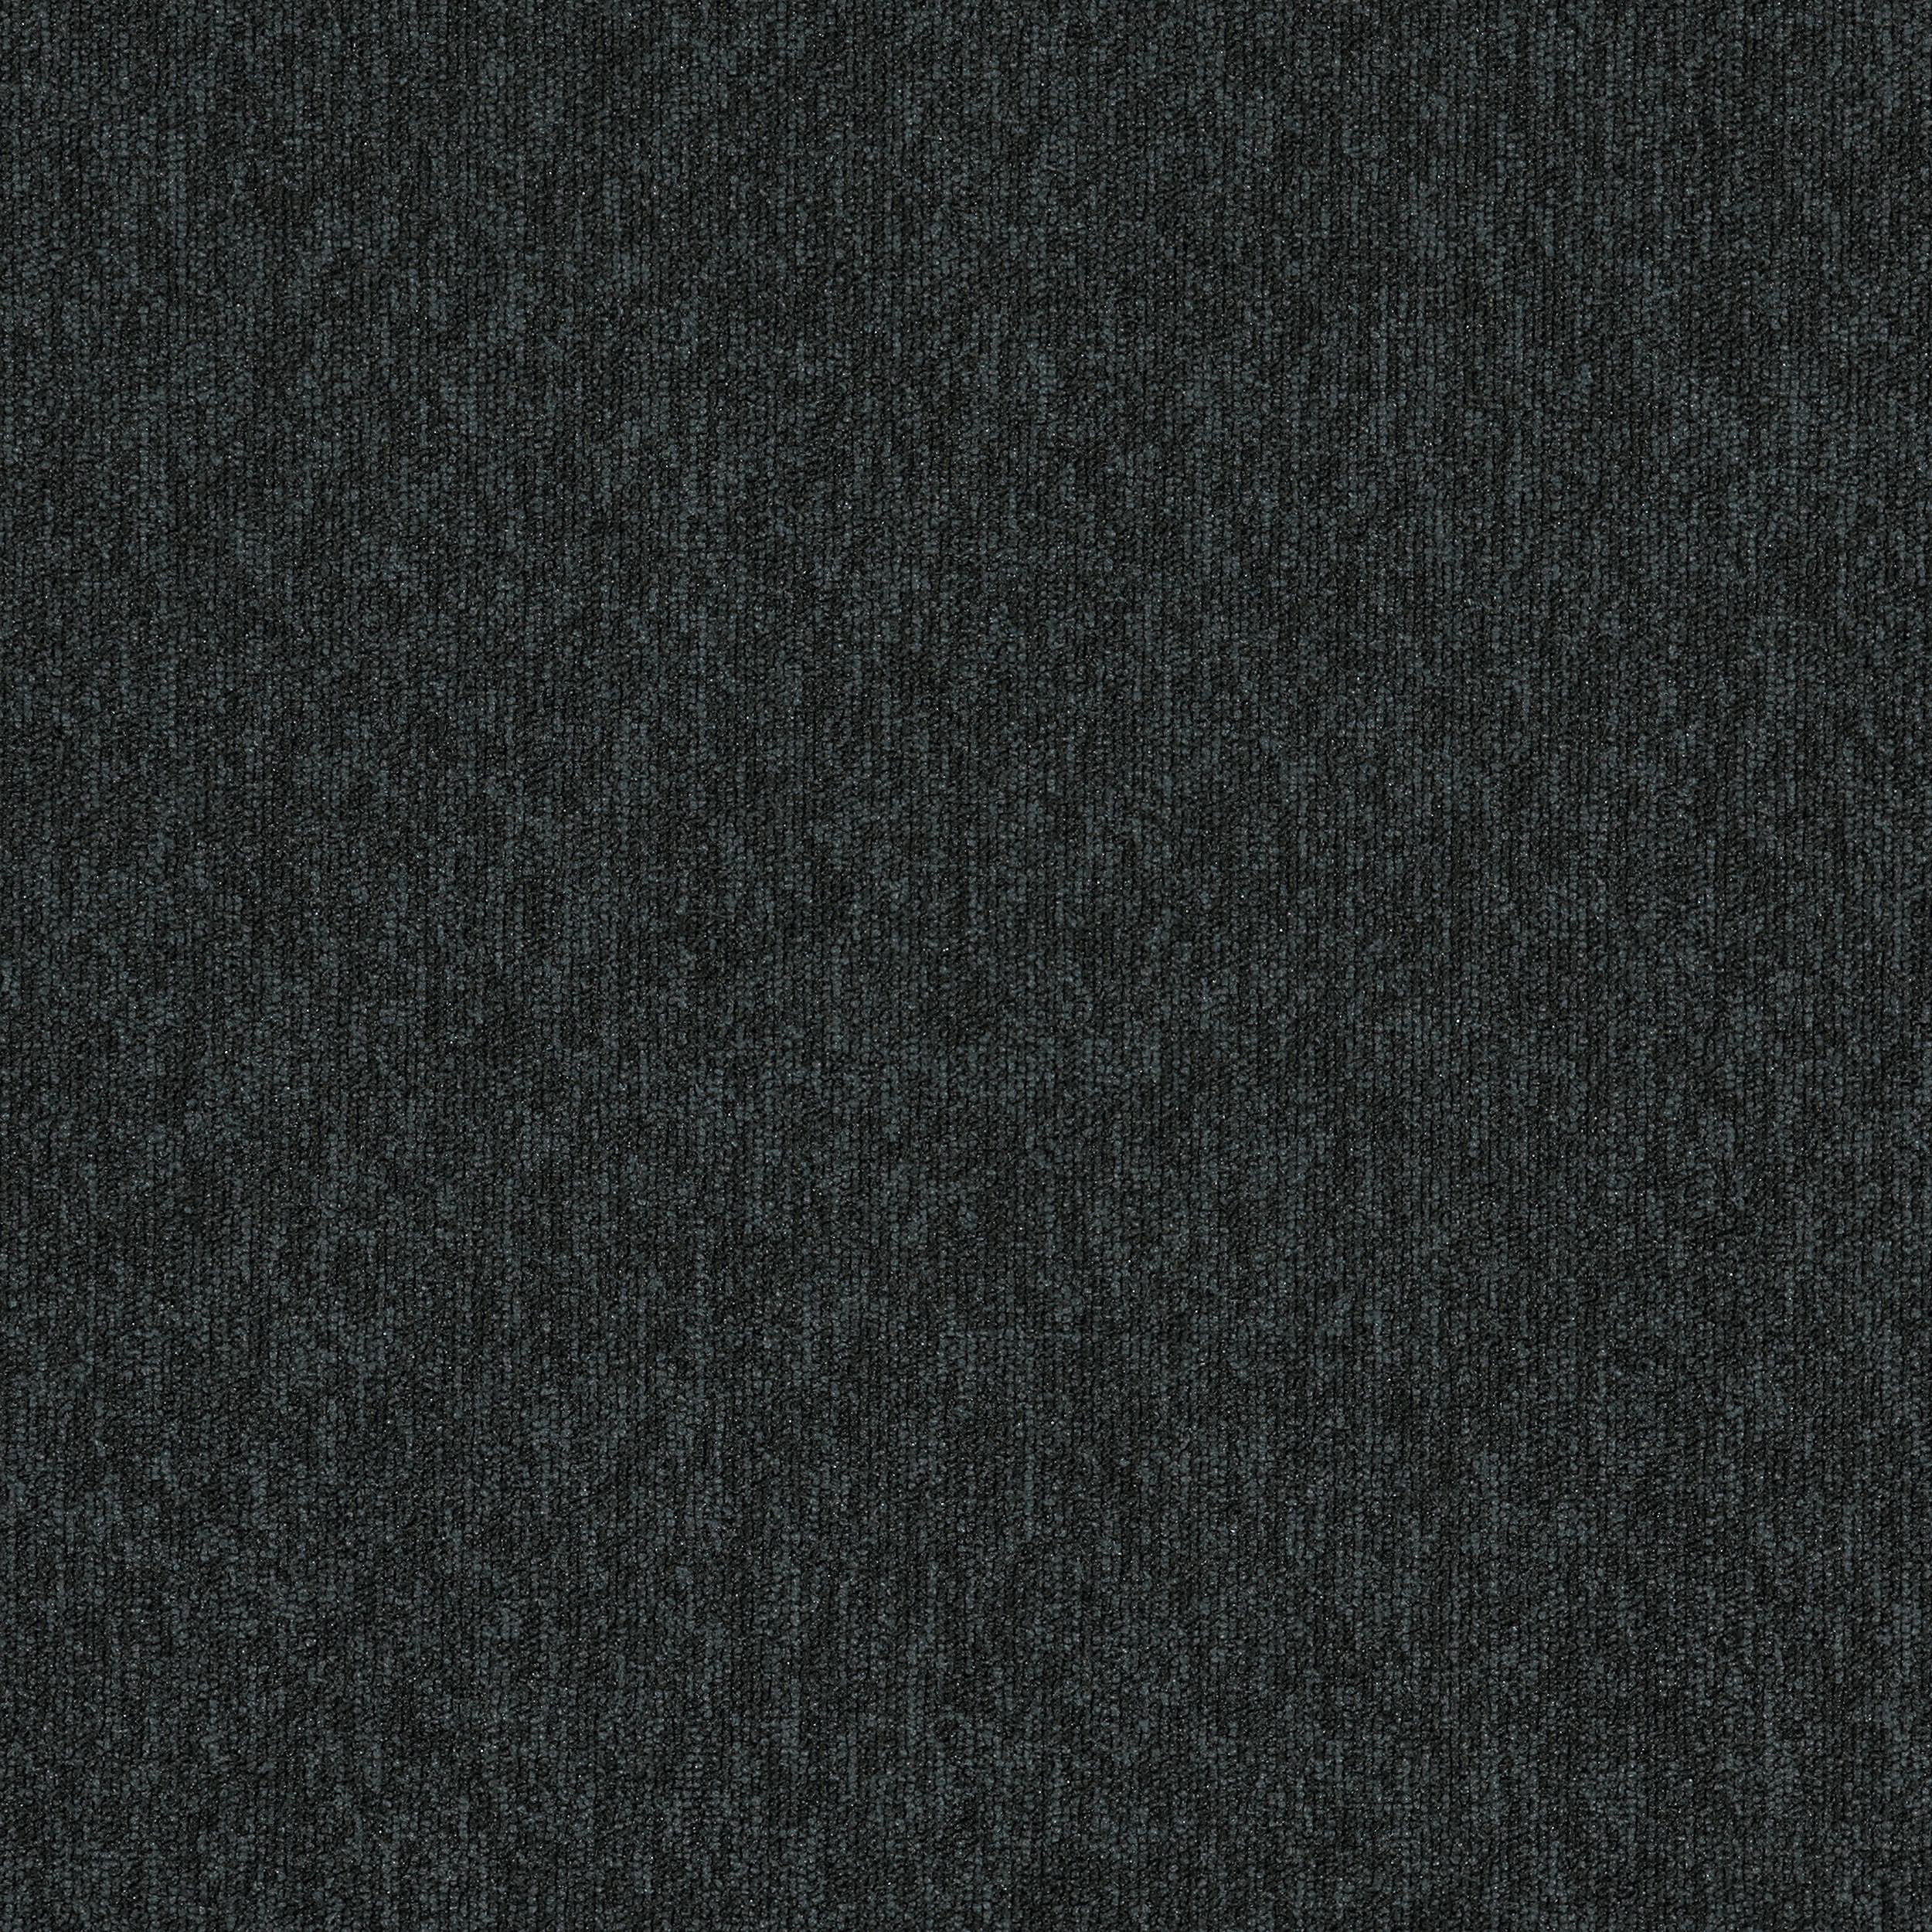 New Horizons II Carpet Tile In Carbon Bildnummer 3